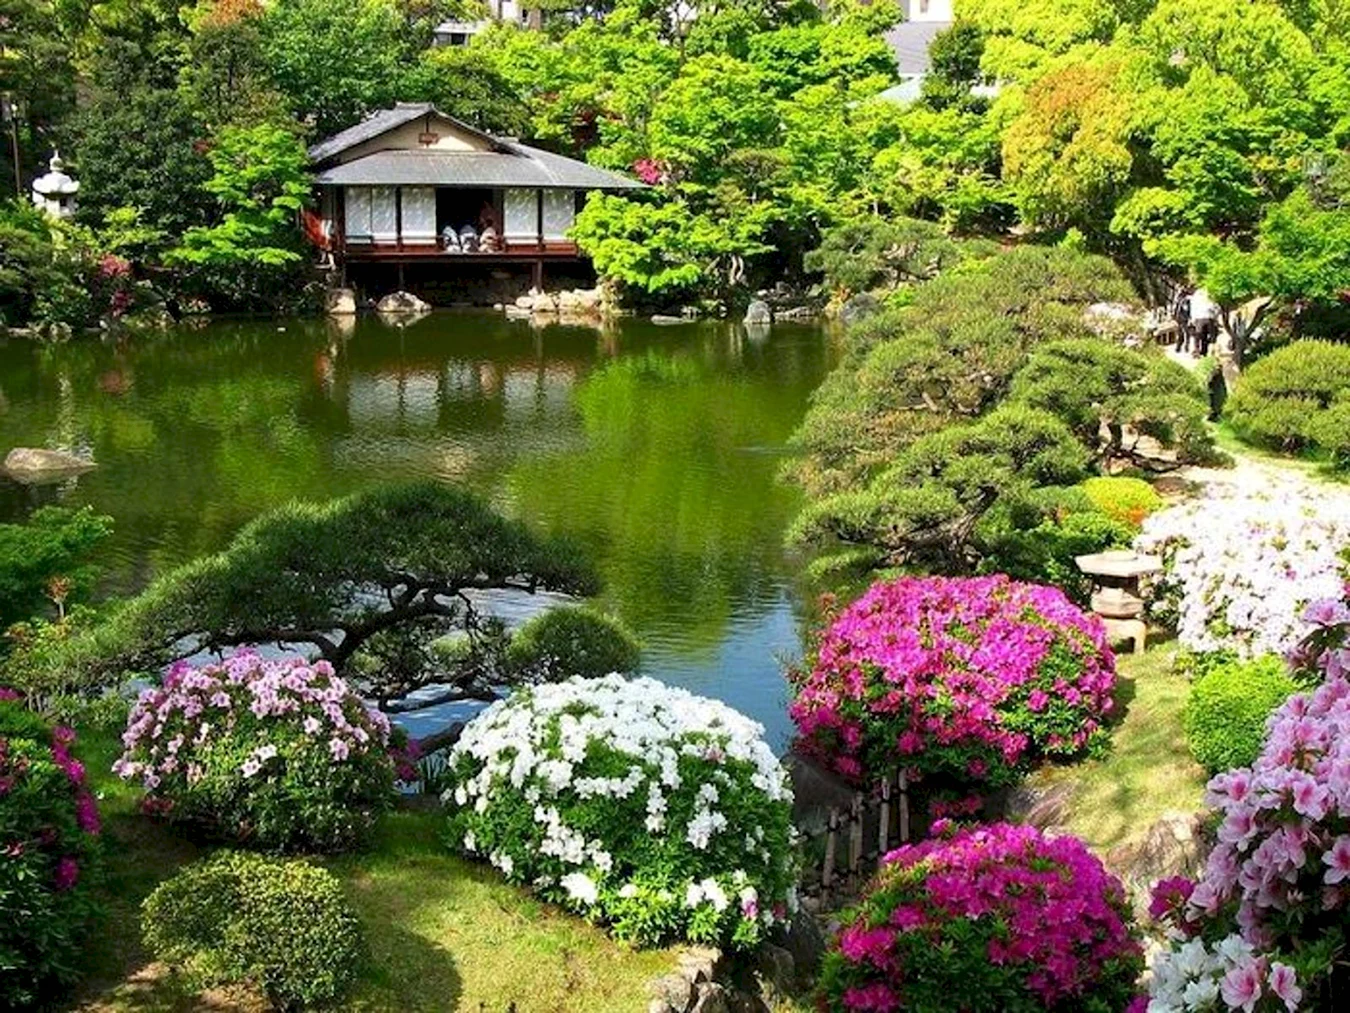 Ландшафтный пейзажный сад Японии